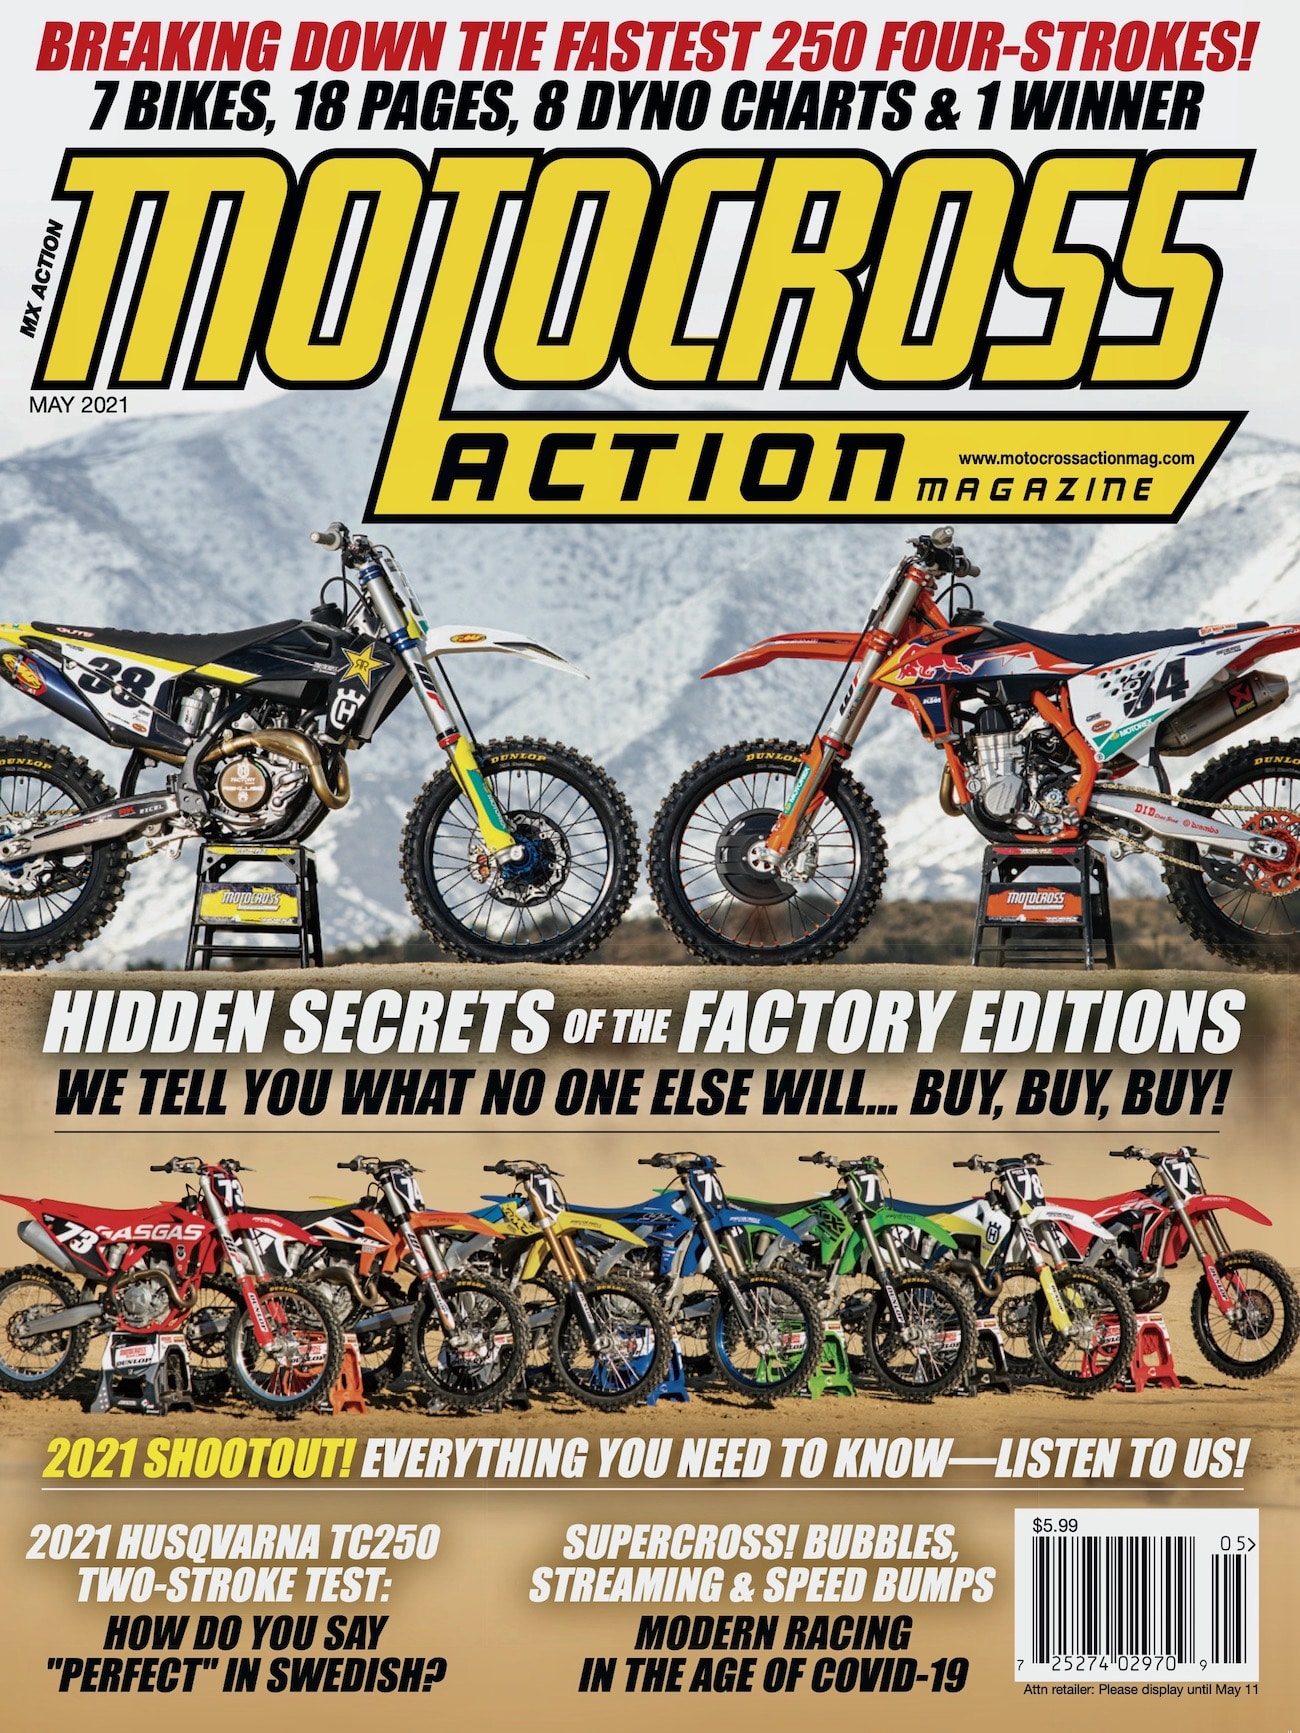 PROBADO POR EL EQUIPO MXA: FLY RACING EVOLUTION DST GEAR - Motocross Action  Magazine